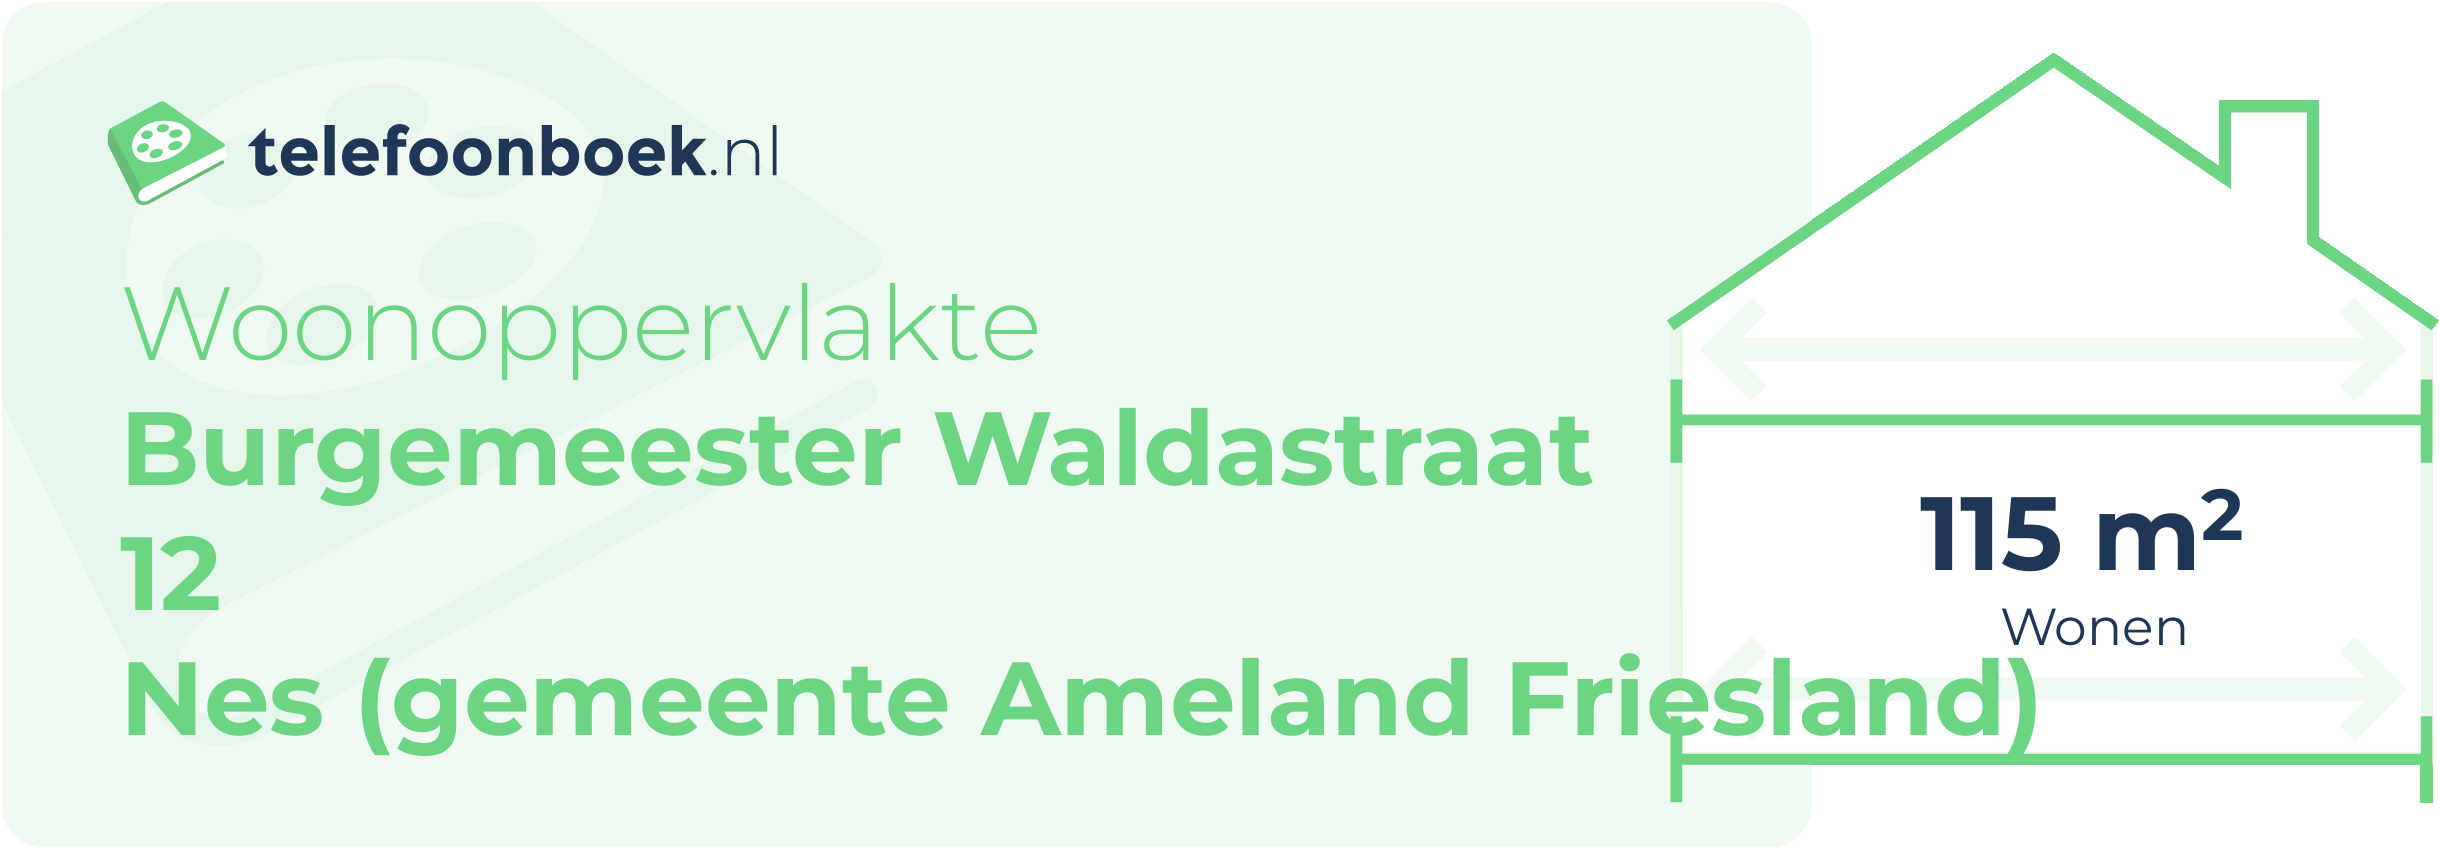 Woonoppervlakte Burgemeester Waldastraat 12 Nes (gemeente Ameland Friesland)